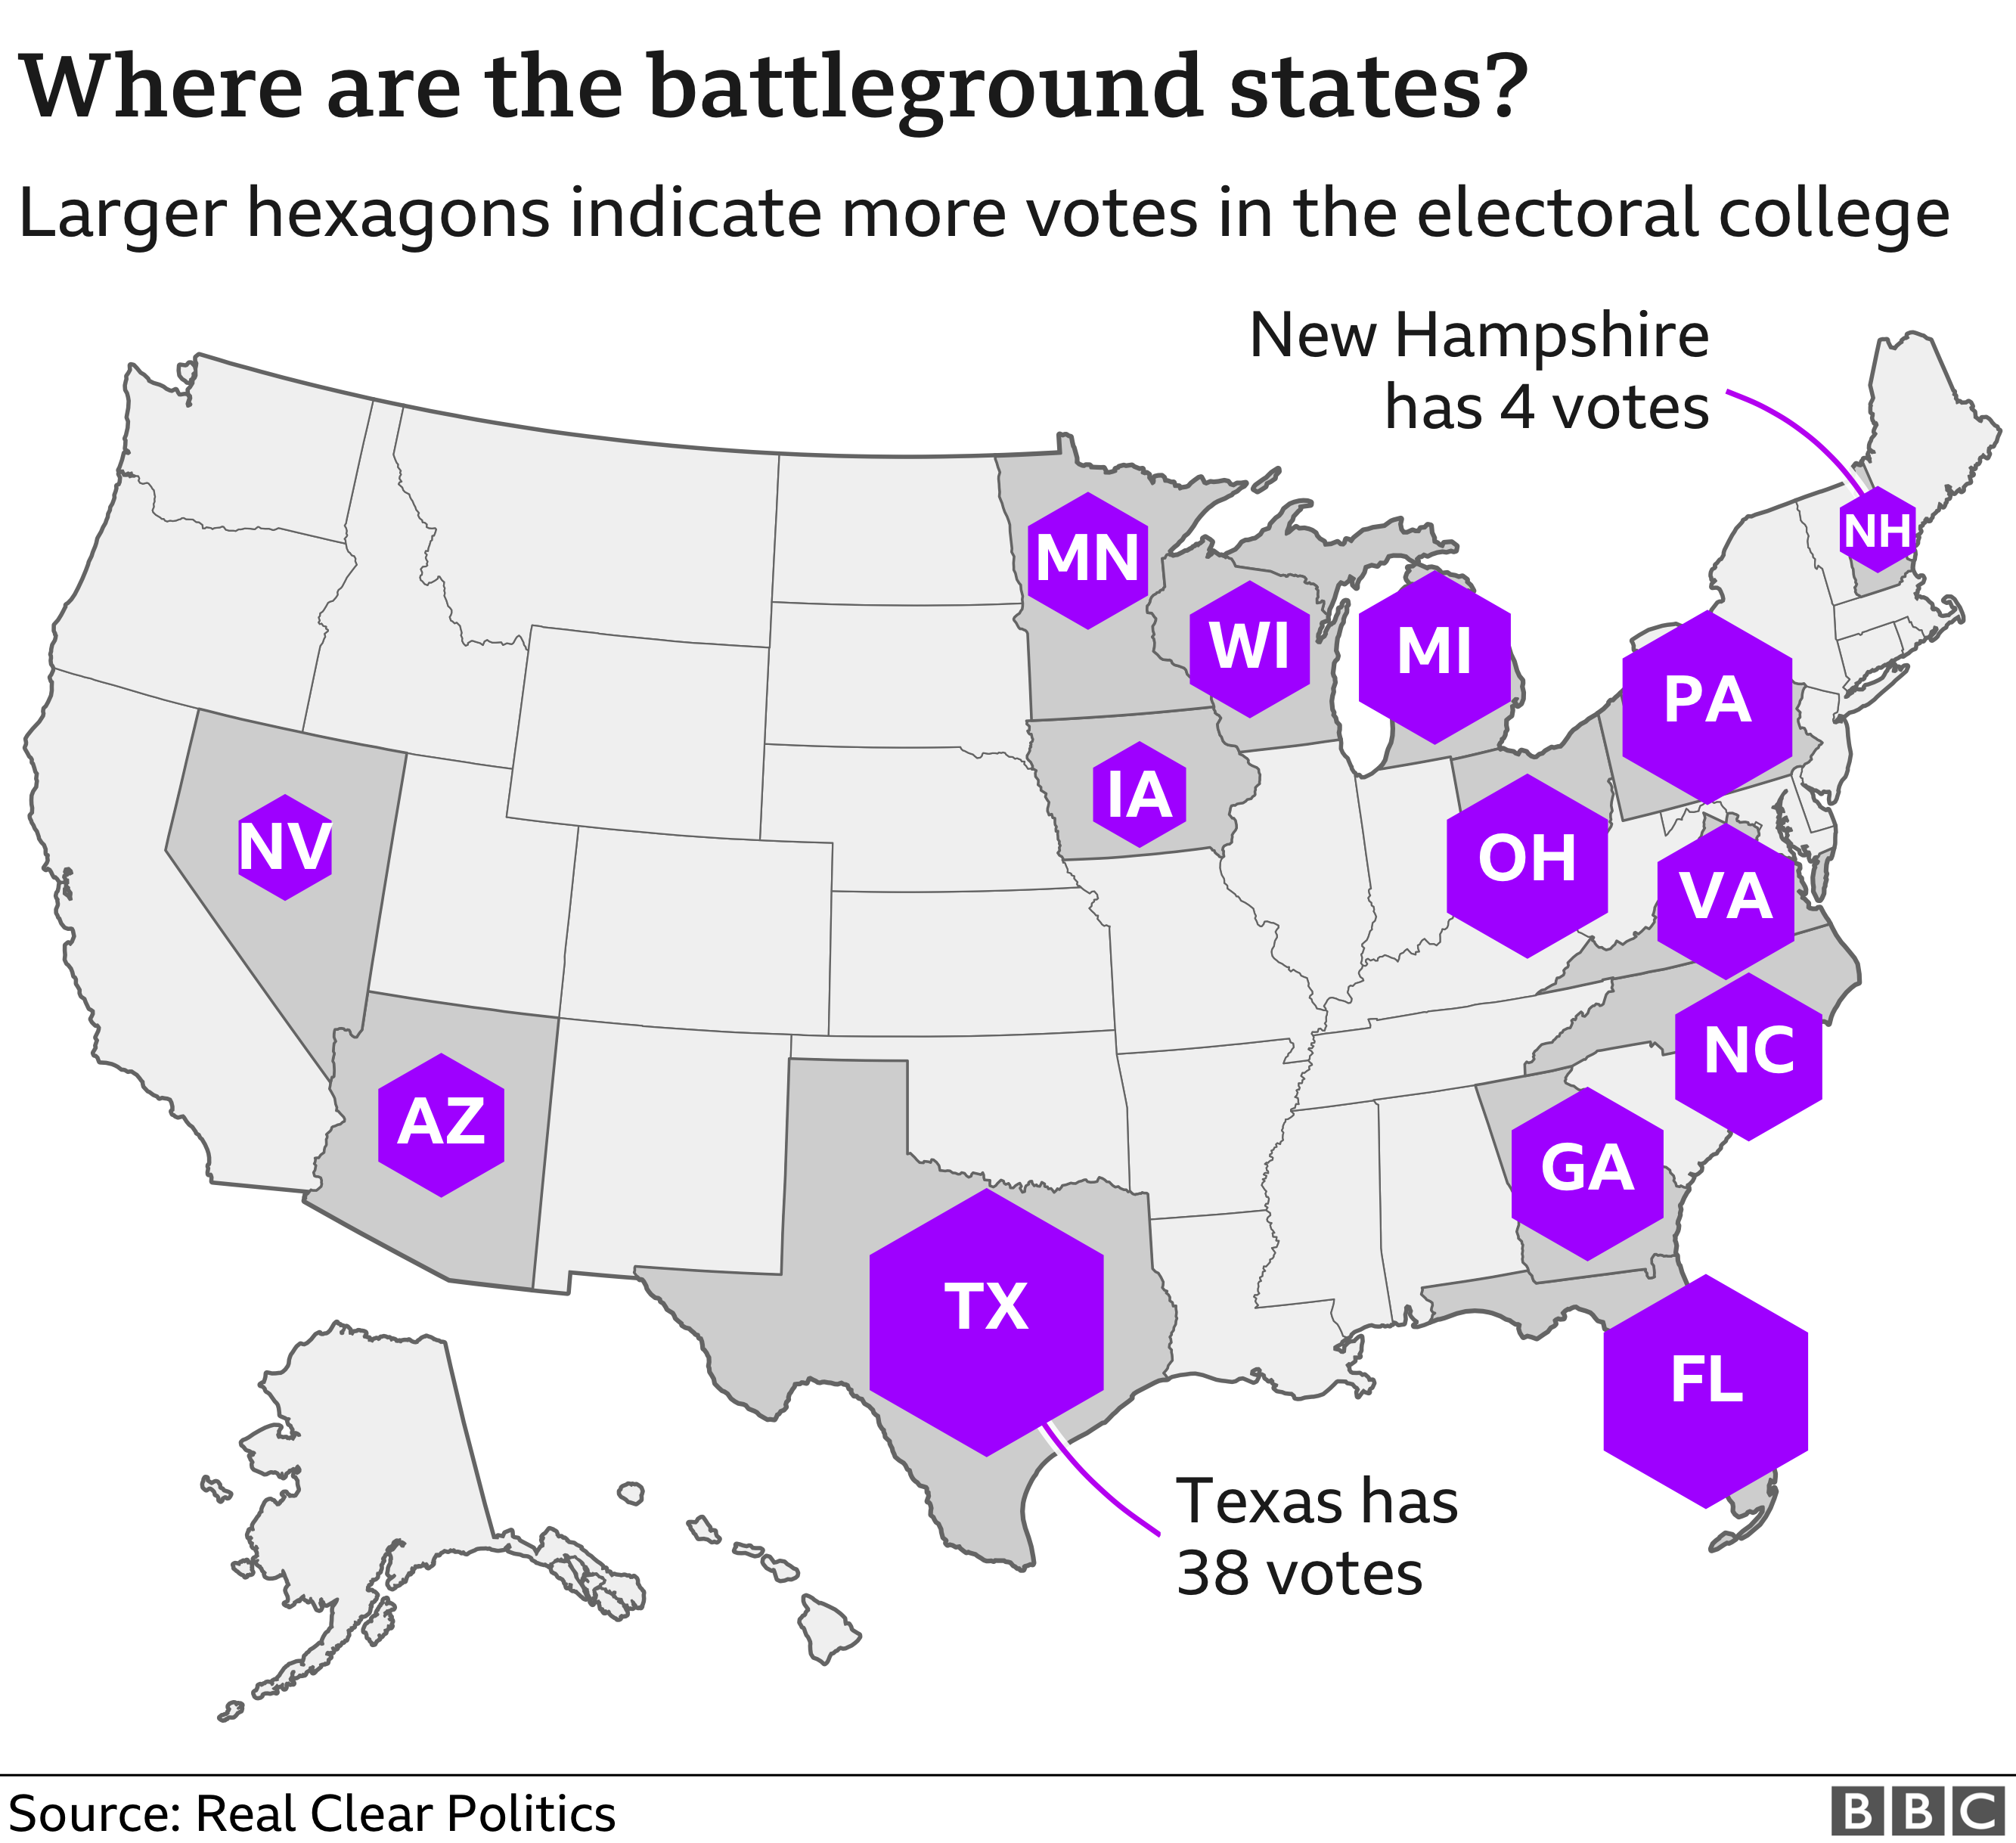 Карта, показывающая, где находятся государства на поле боя на выборах 2020 года. Техас имеет наибольшее количество голосов коллегии выборщиков (38), а Нью-Гэмпшир - наименьшее количество (4)